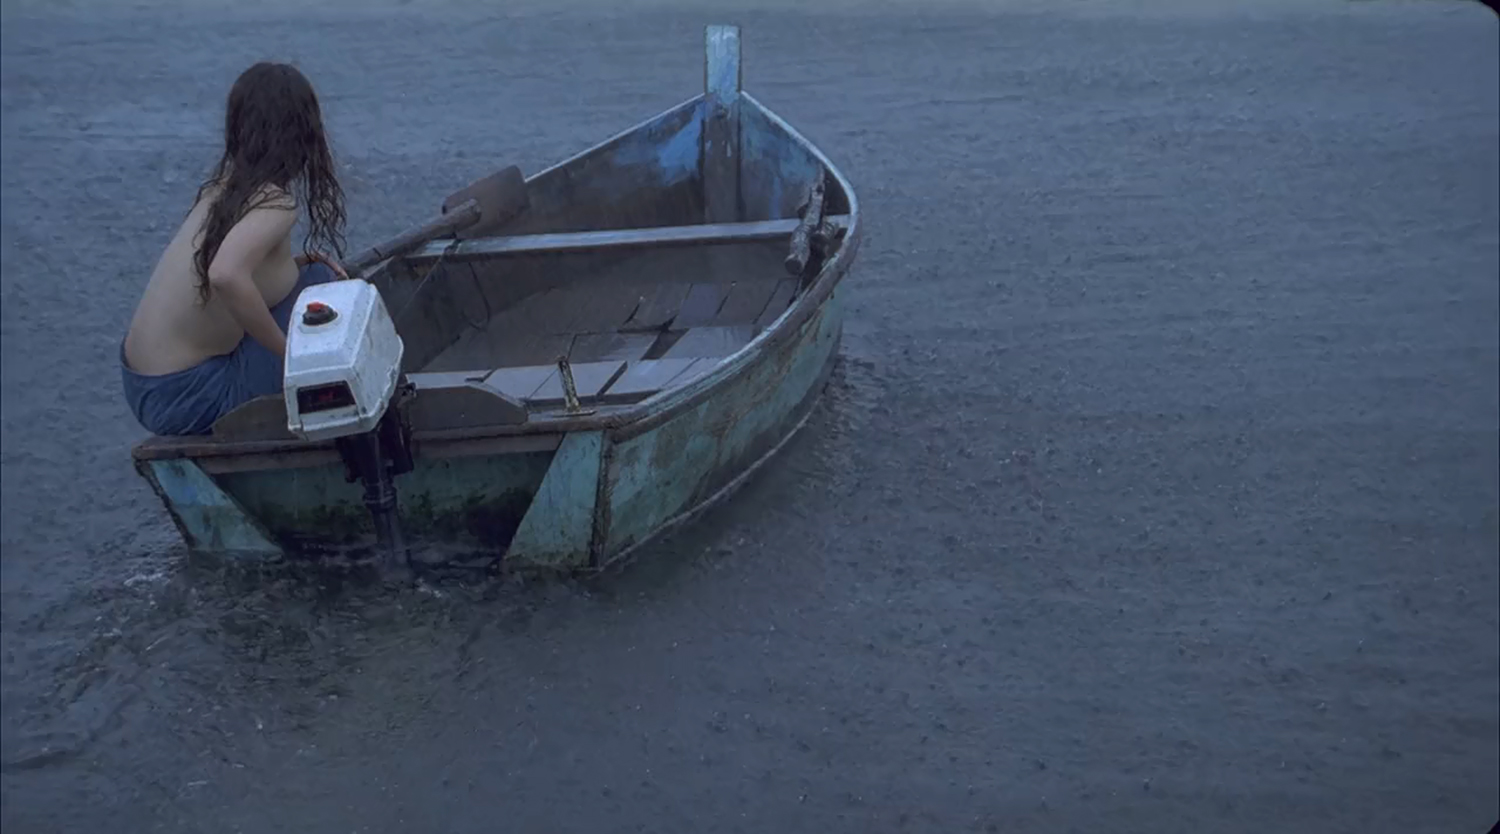 Dark Korean Erotic Films - The Isle, boat